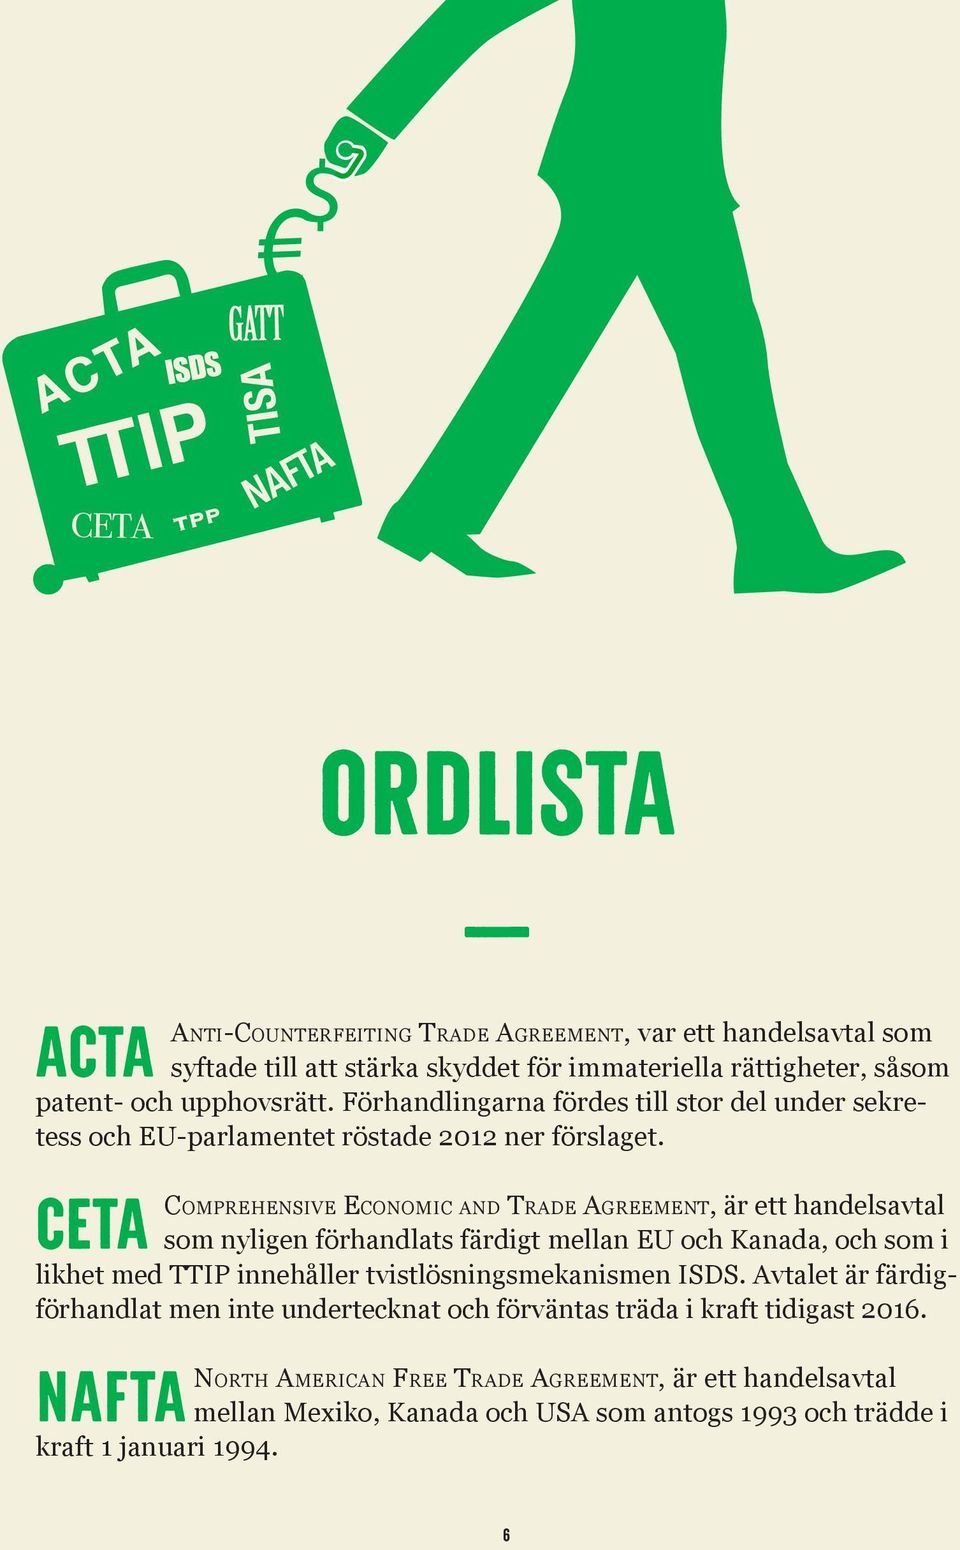 CETA Comprehensive Economic and Trade Agreement, är ett handelsavtal som nyligen förhandlats färdigt mellan EU och Kanada, och som i likhet med TTIP innehåller